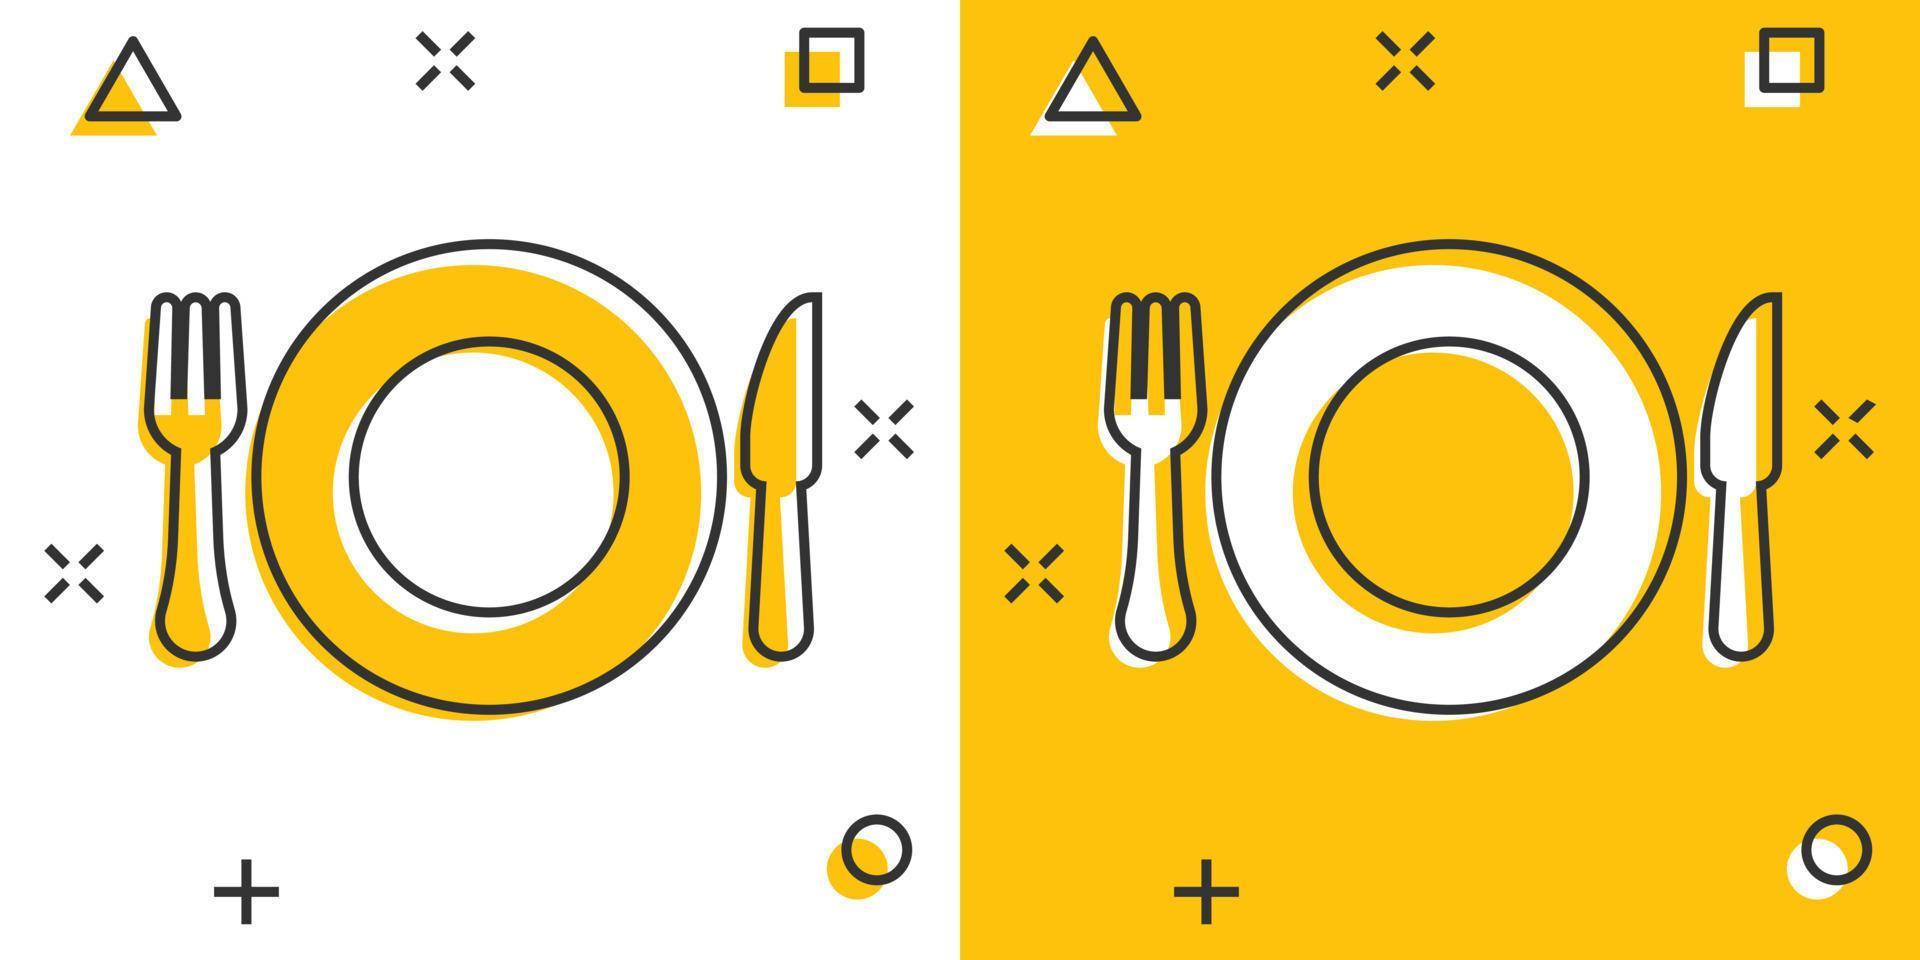 Gabel und Messer-Restaurant-Ikone im Comic-Stil. abendessen ausrüstung vektor cartoon illustration piktogramm. Restaurant-Business-Konzept-Splash-Effekt.